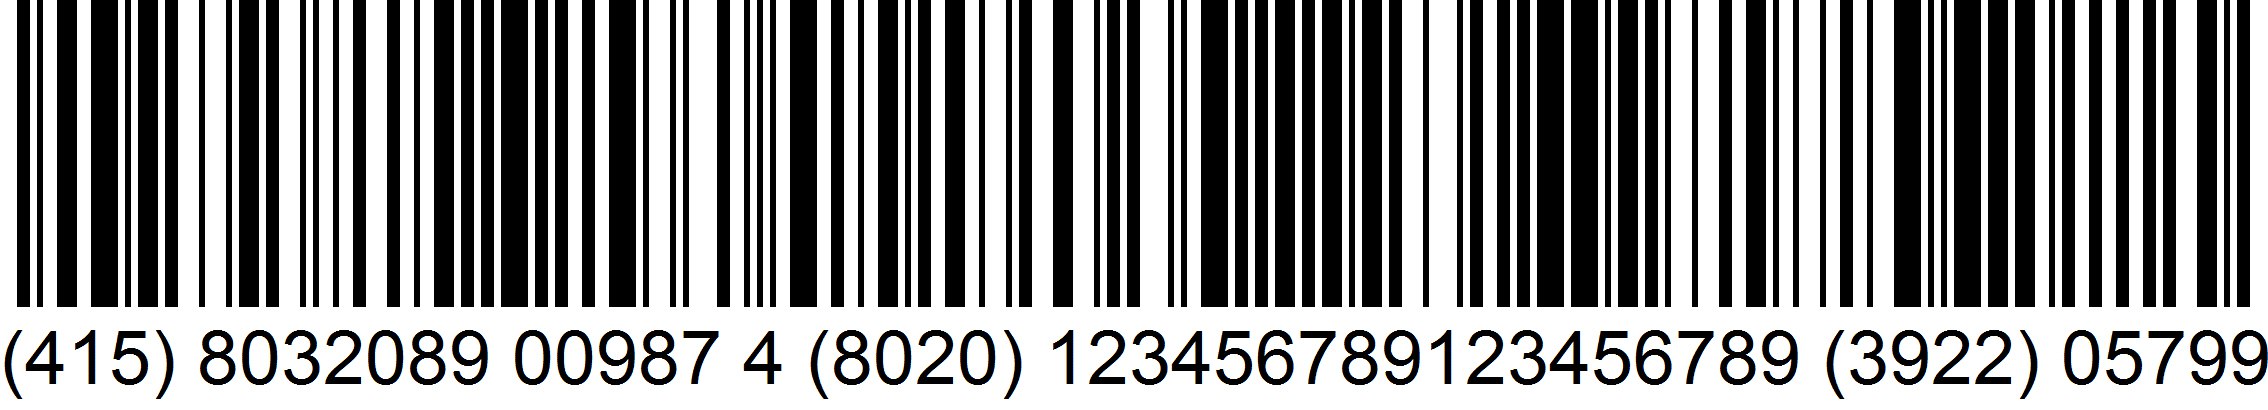 Il simbolo del Codice a Barre GS1 EAN-128 per bollettini di pagamento